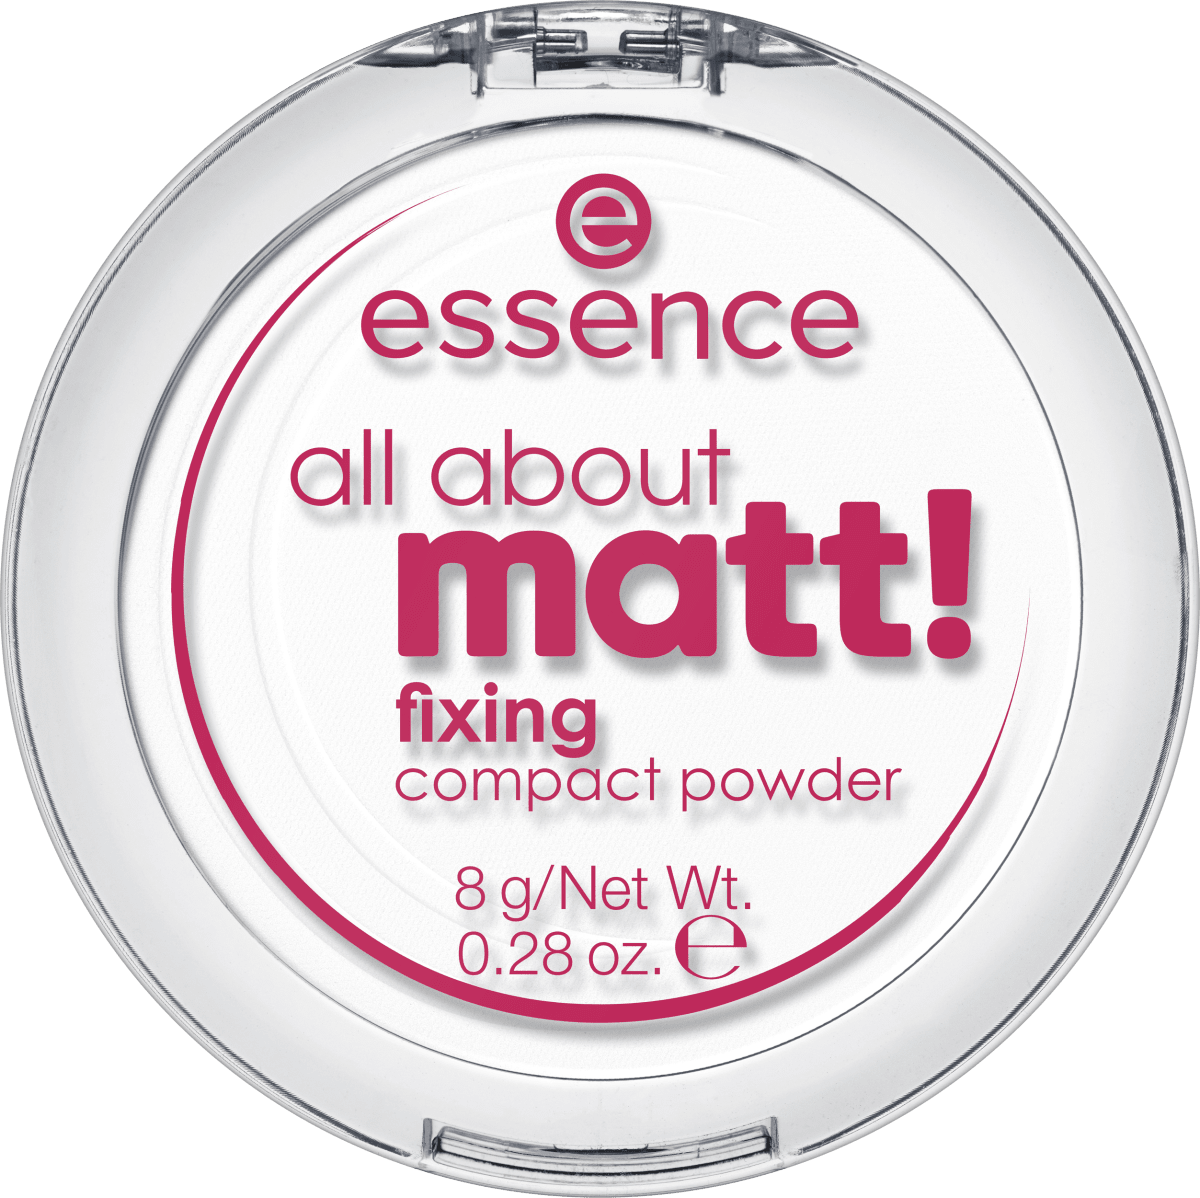 günstig Matt! Kompakt Puder essence dauerhaft g Fixing, kaufen About online All 8